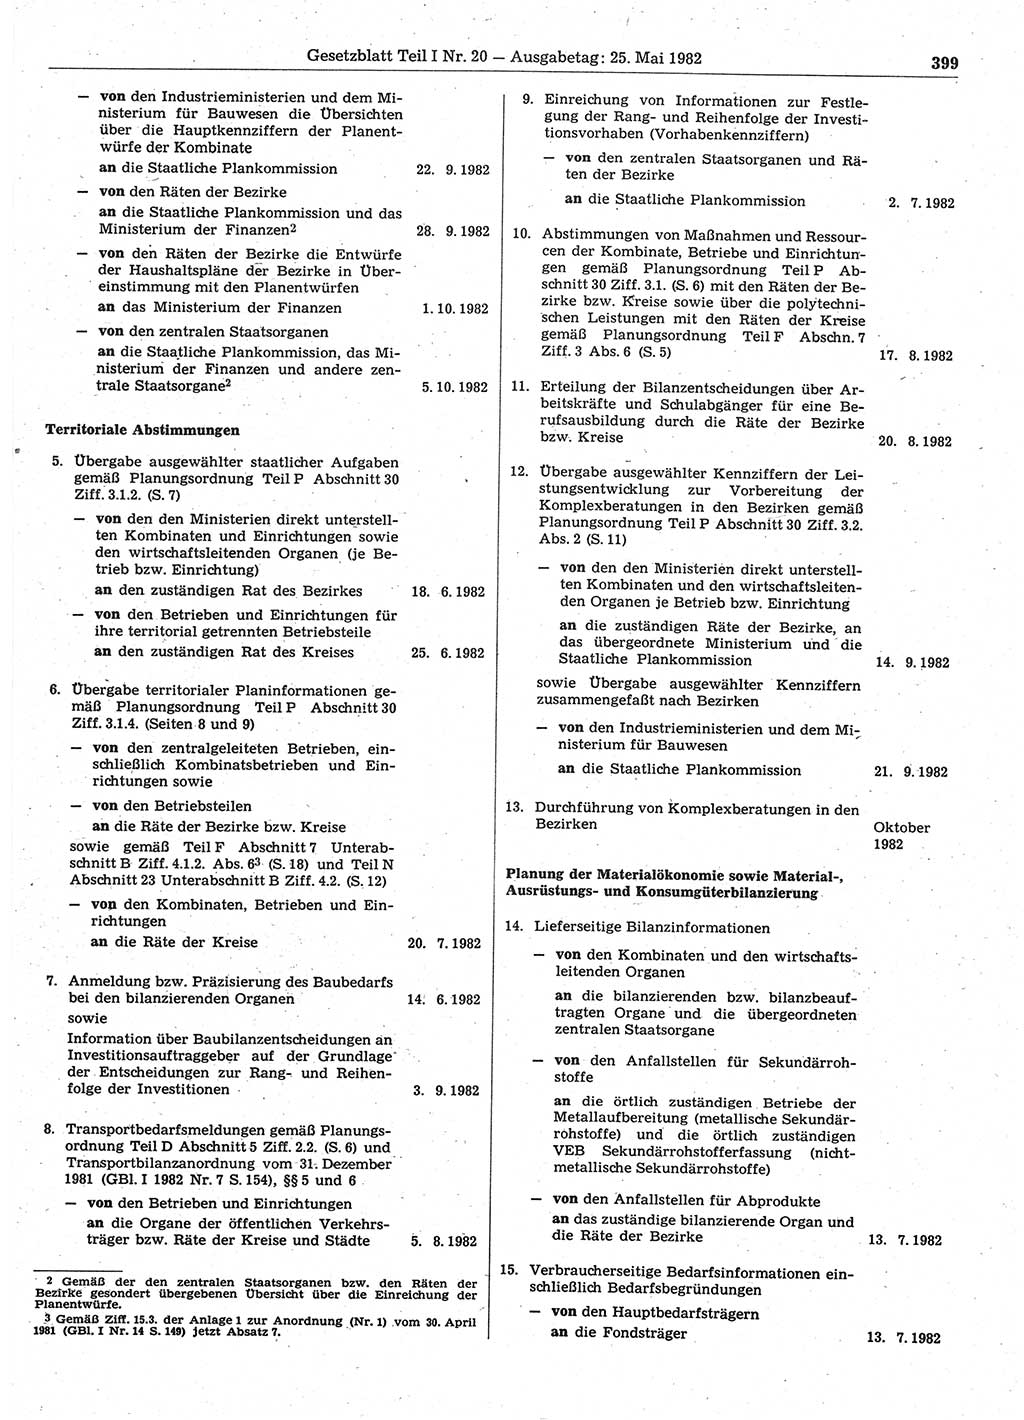 Gesetzblatt (GBl.) der Deutschen Demokratischen Republik (DDR) Teil Ⅰ 1982, Seite 399 (GBl. DDR Ⅰ 1982, S. 399)